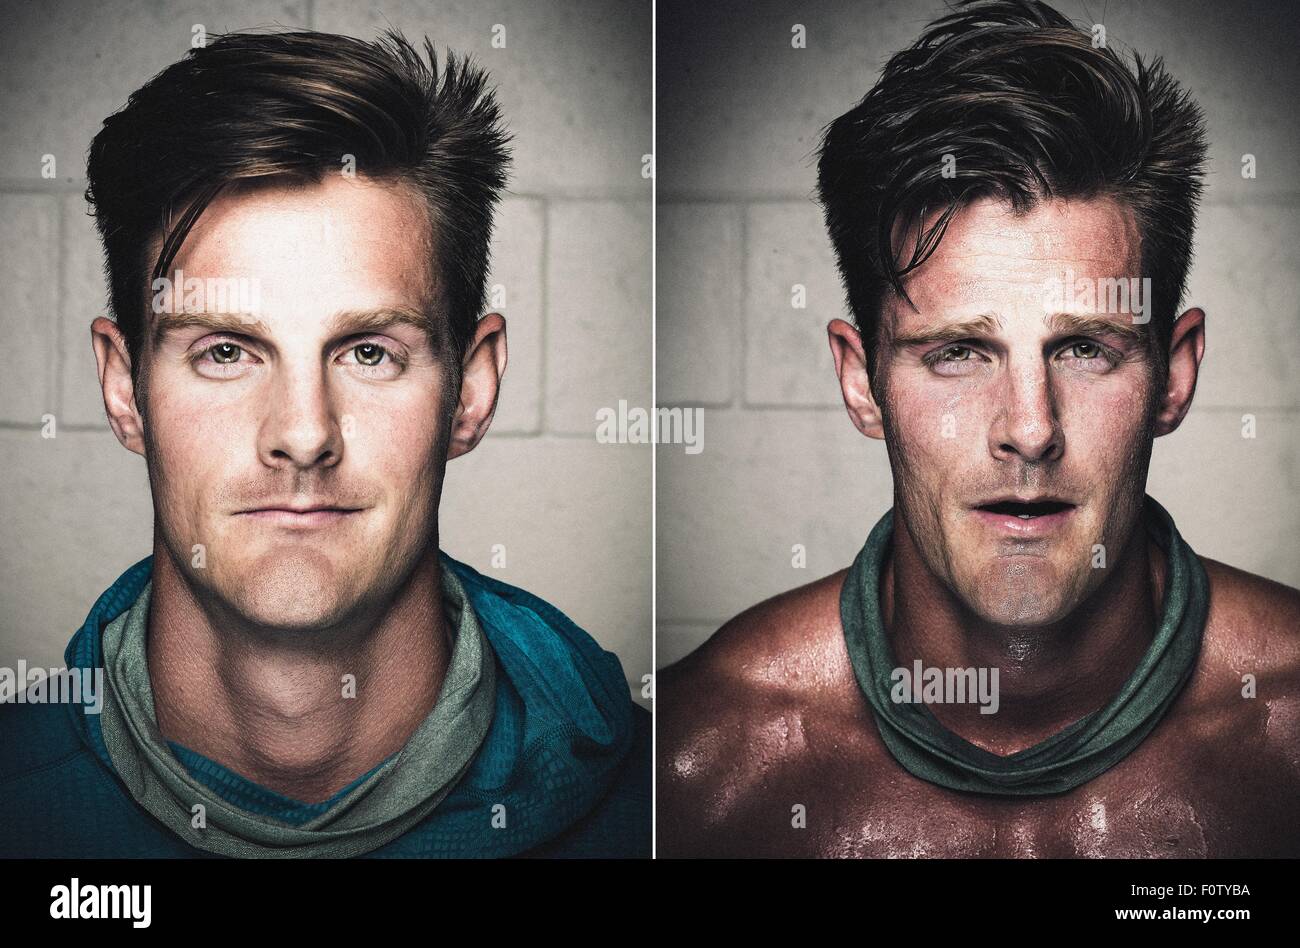 Portraits de Mid adult man avant et après entraînement Banque D'Images